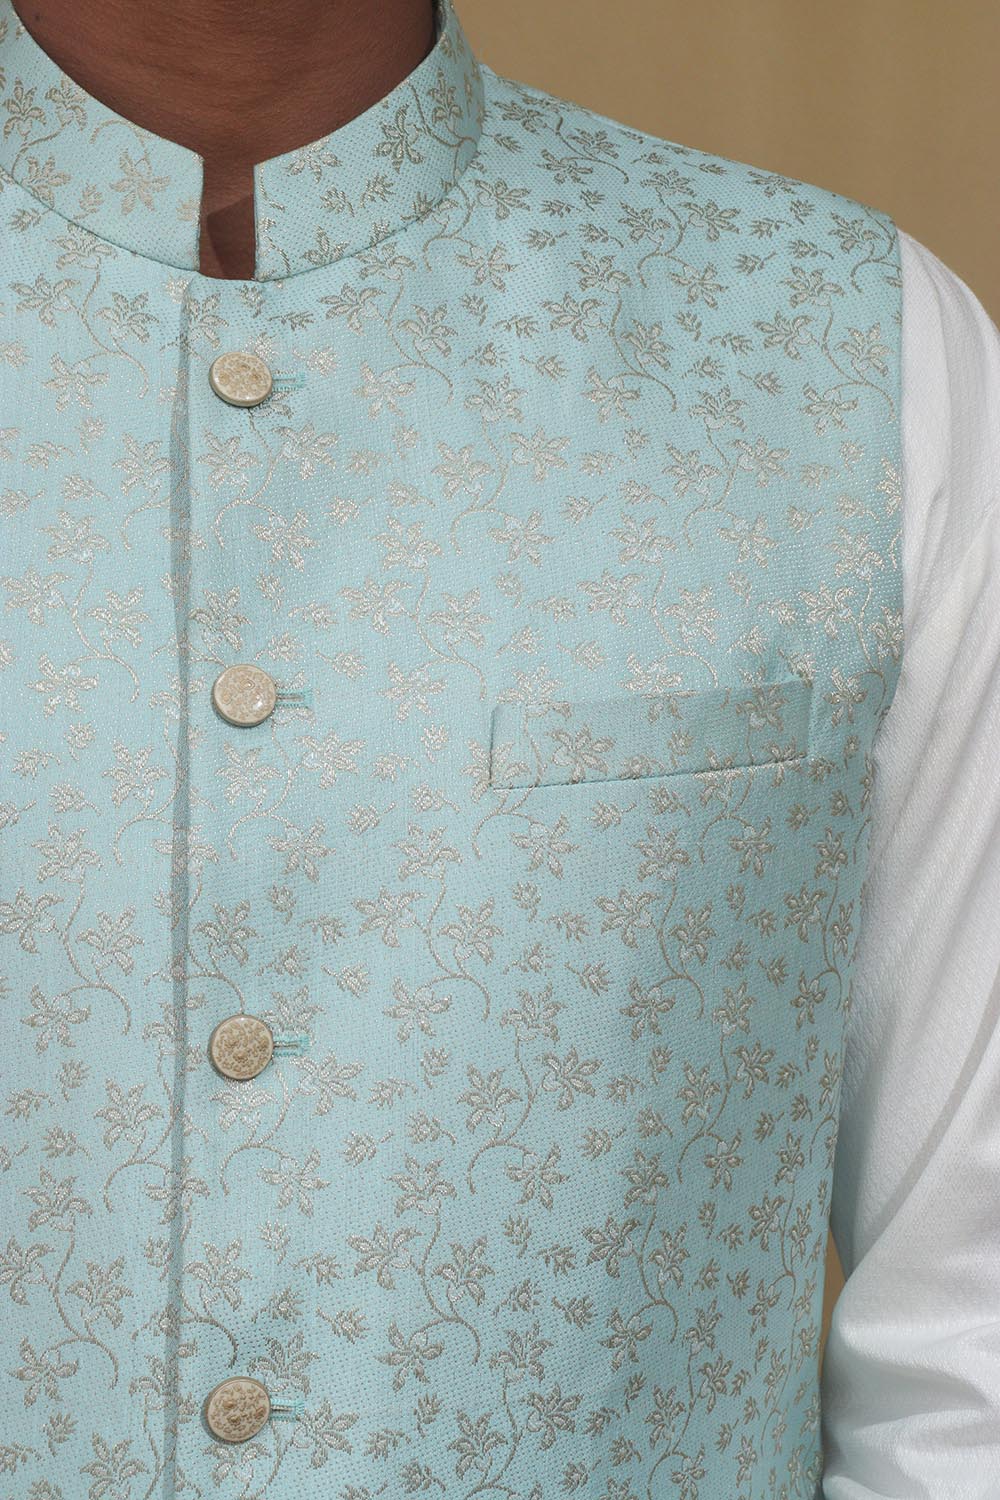 Captivating Blue Banarasi Silk Jacket: Timeless Elegance, Exquisite Style - Luxurion World